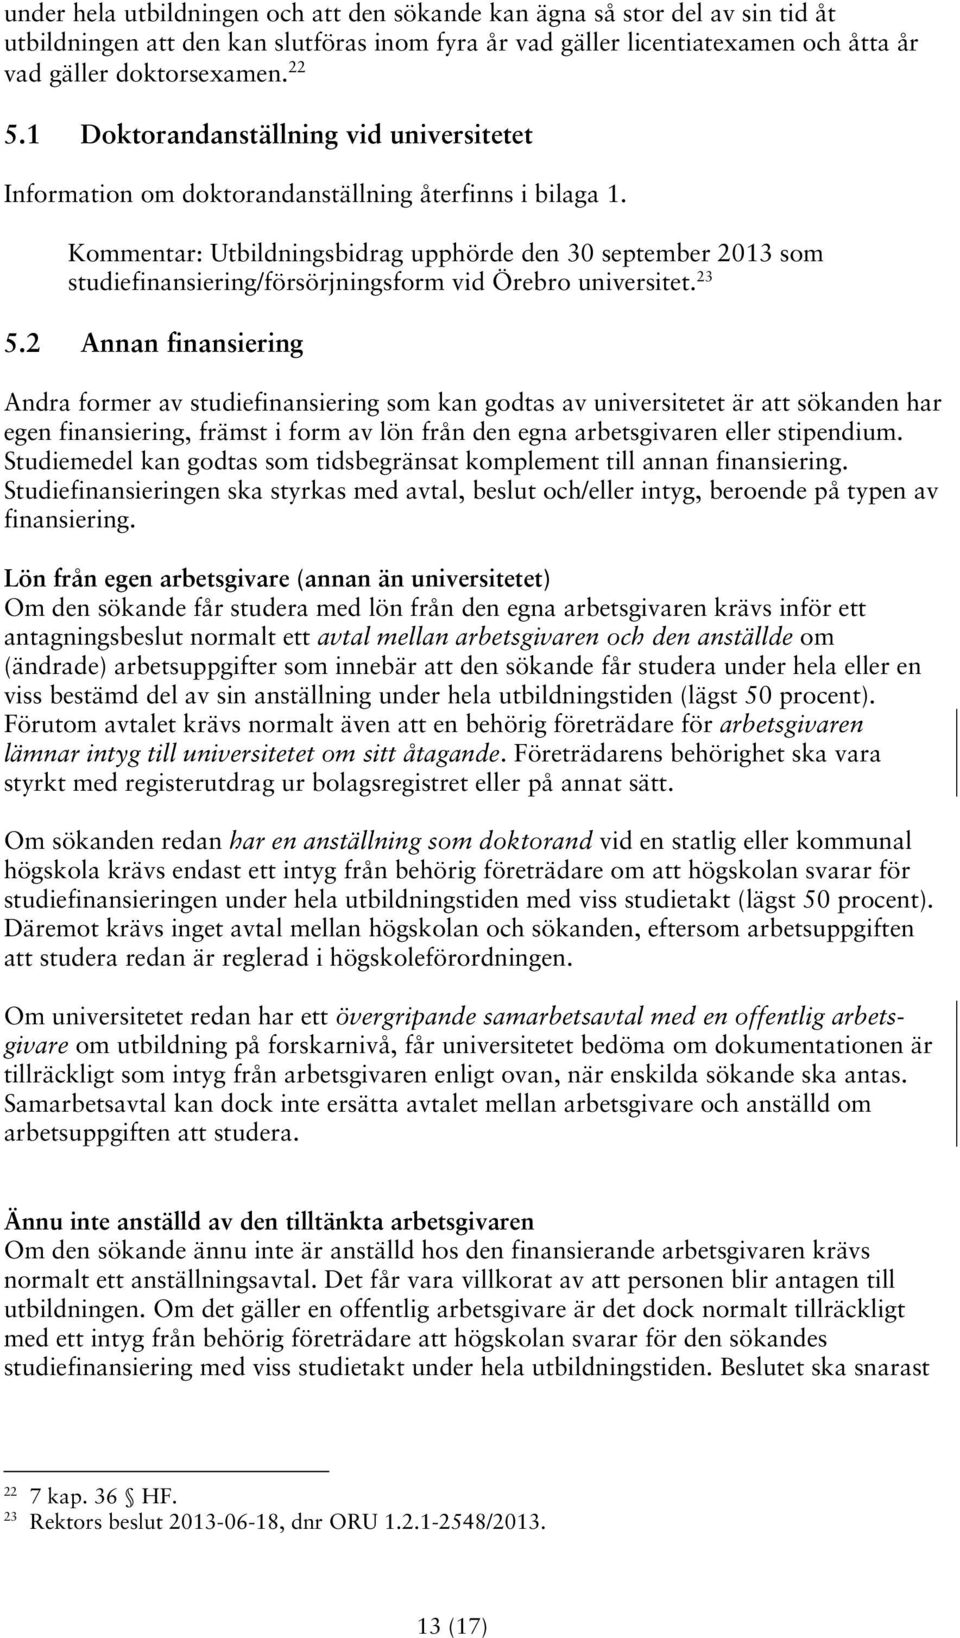 Kommentar: Utbildningsbidrag upphörde den 30 september 2013 som studiefinansiering/försörjningsform vid Örebro universitet. 23 5.